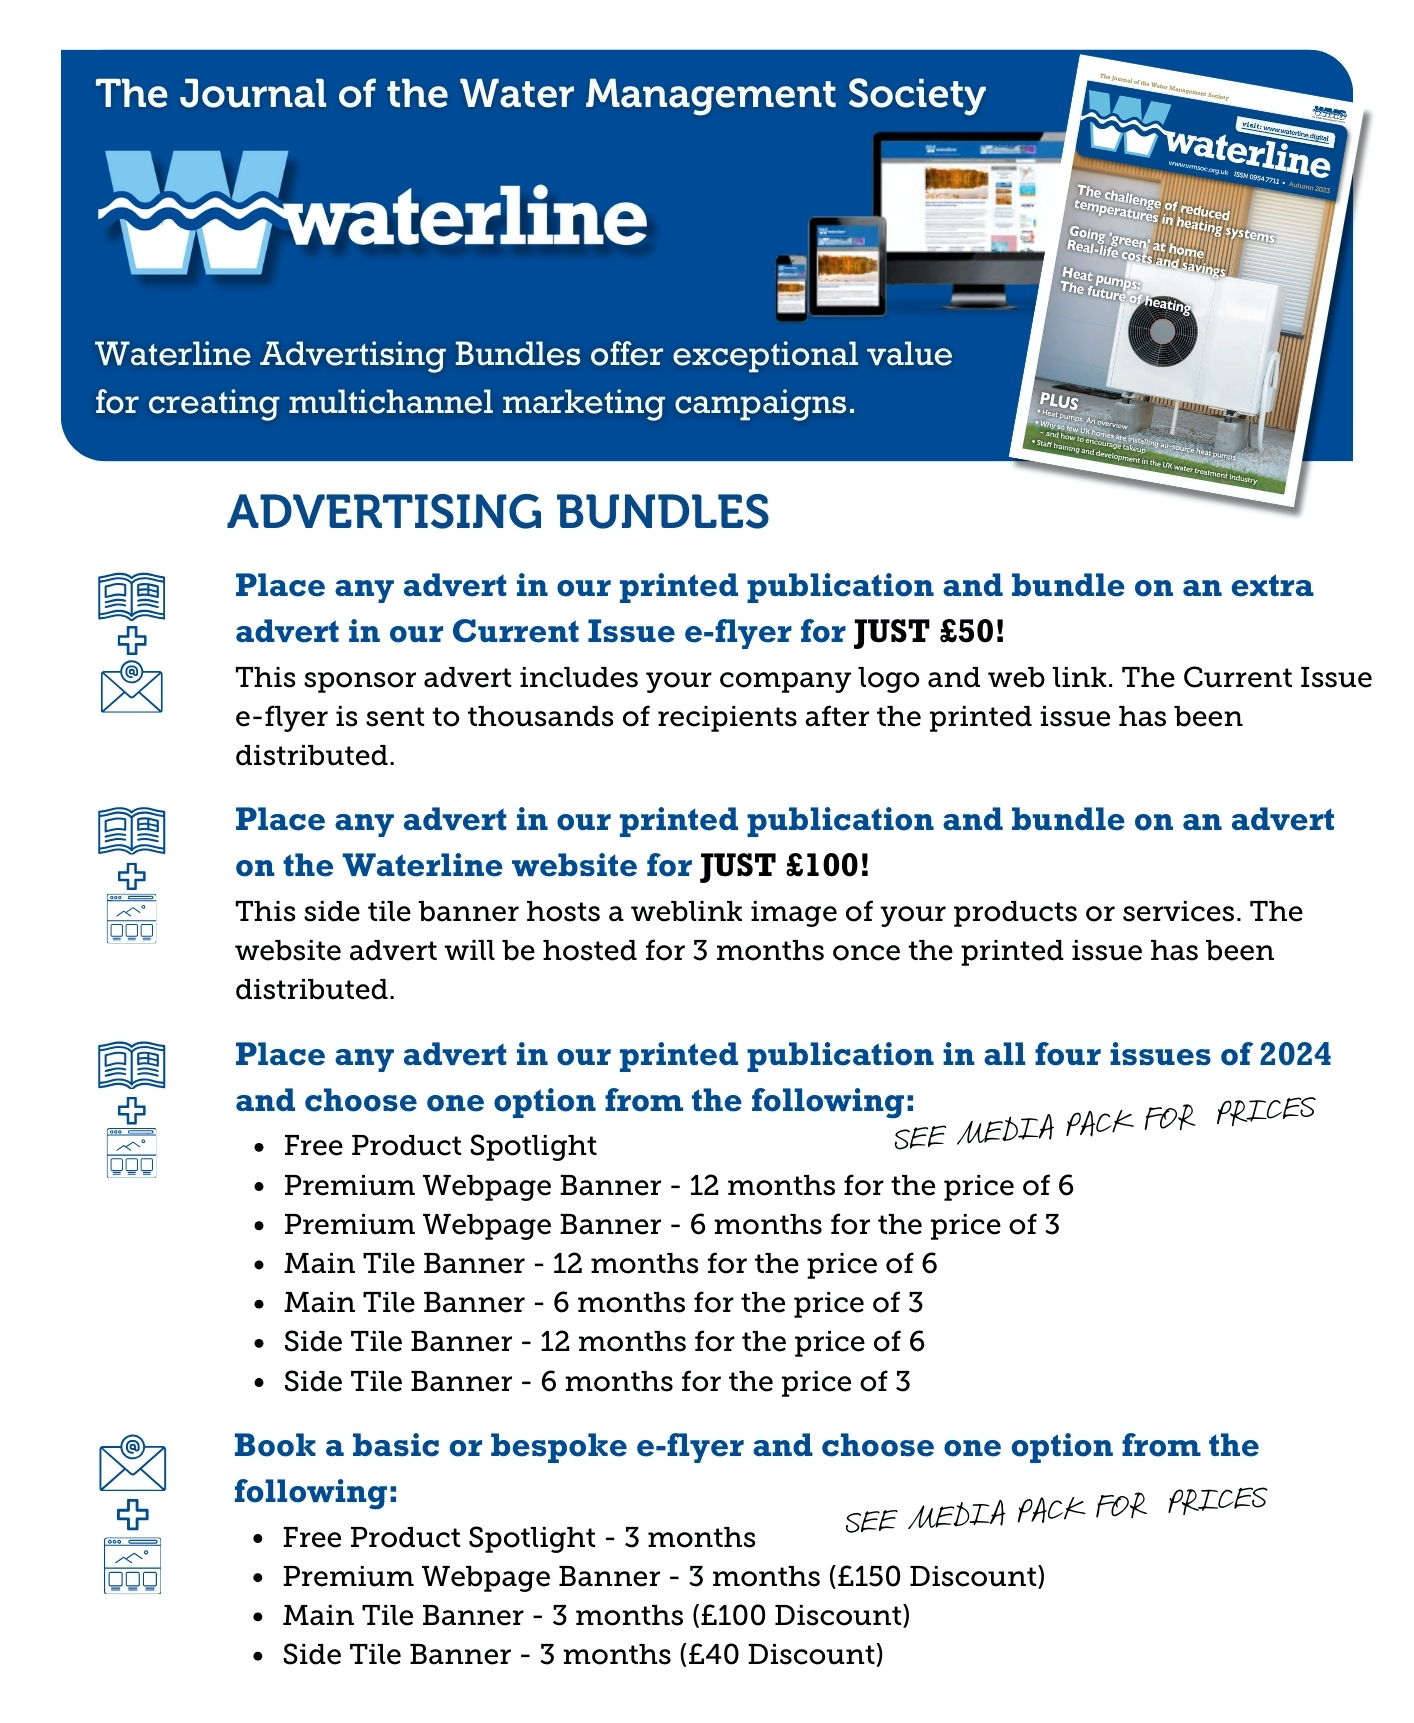 Waterline Advertising Bundles